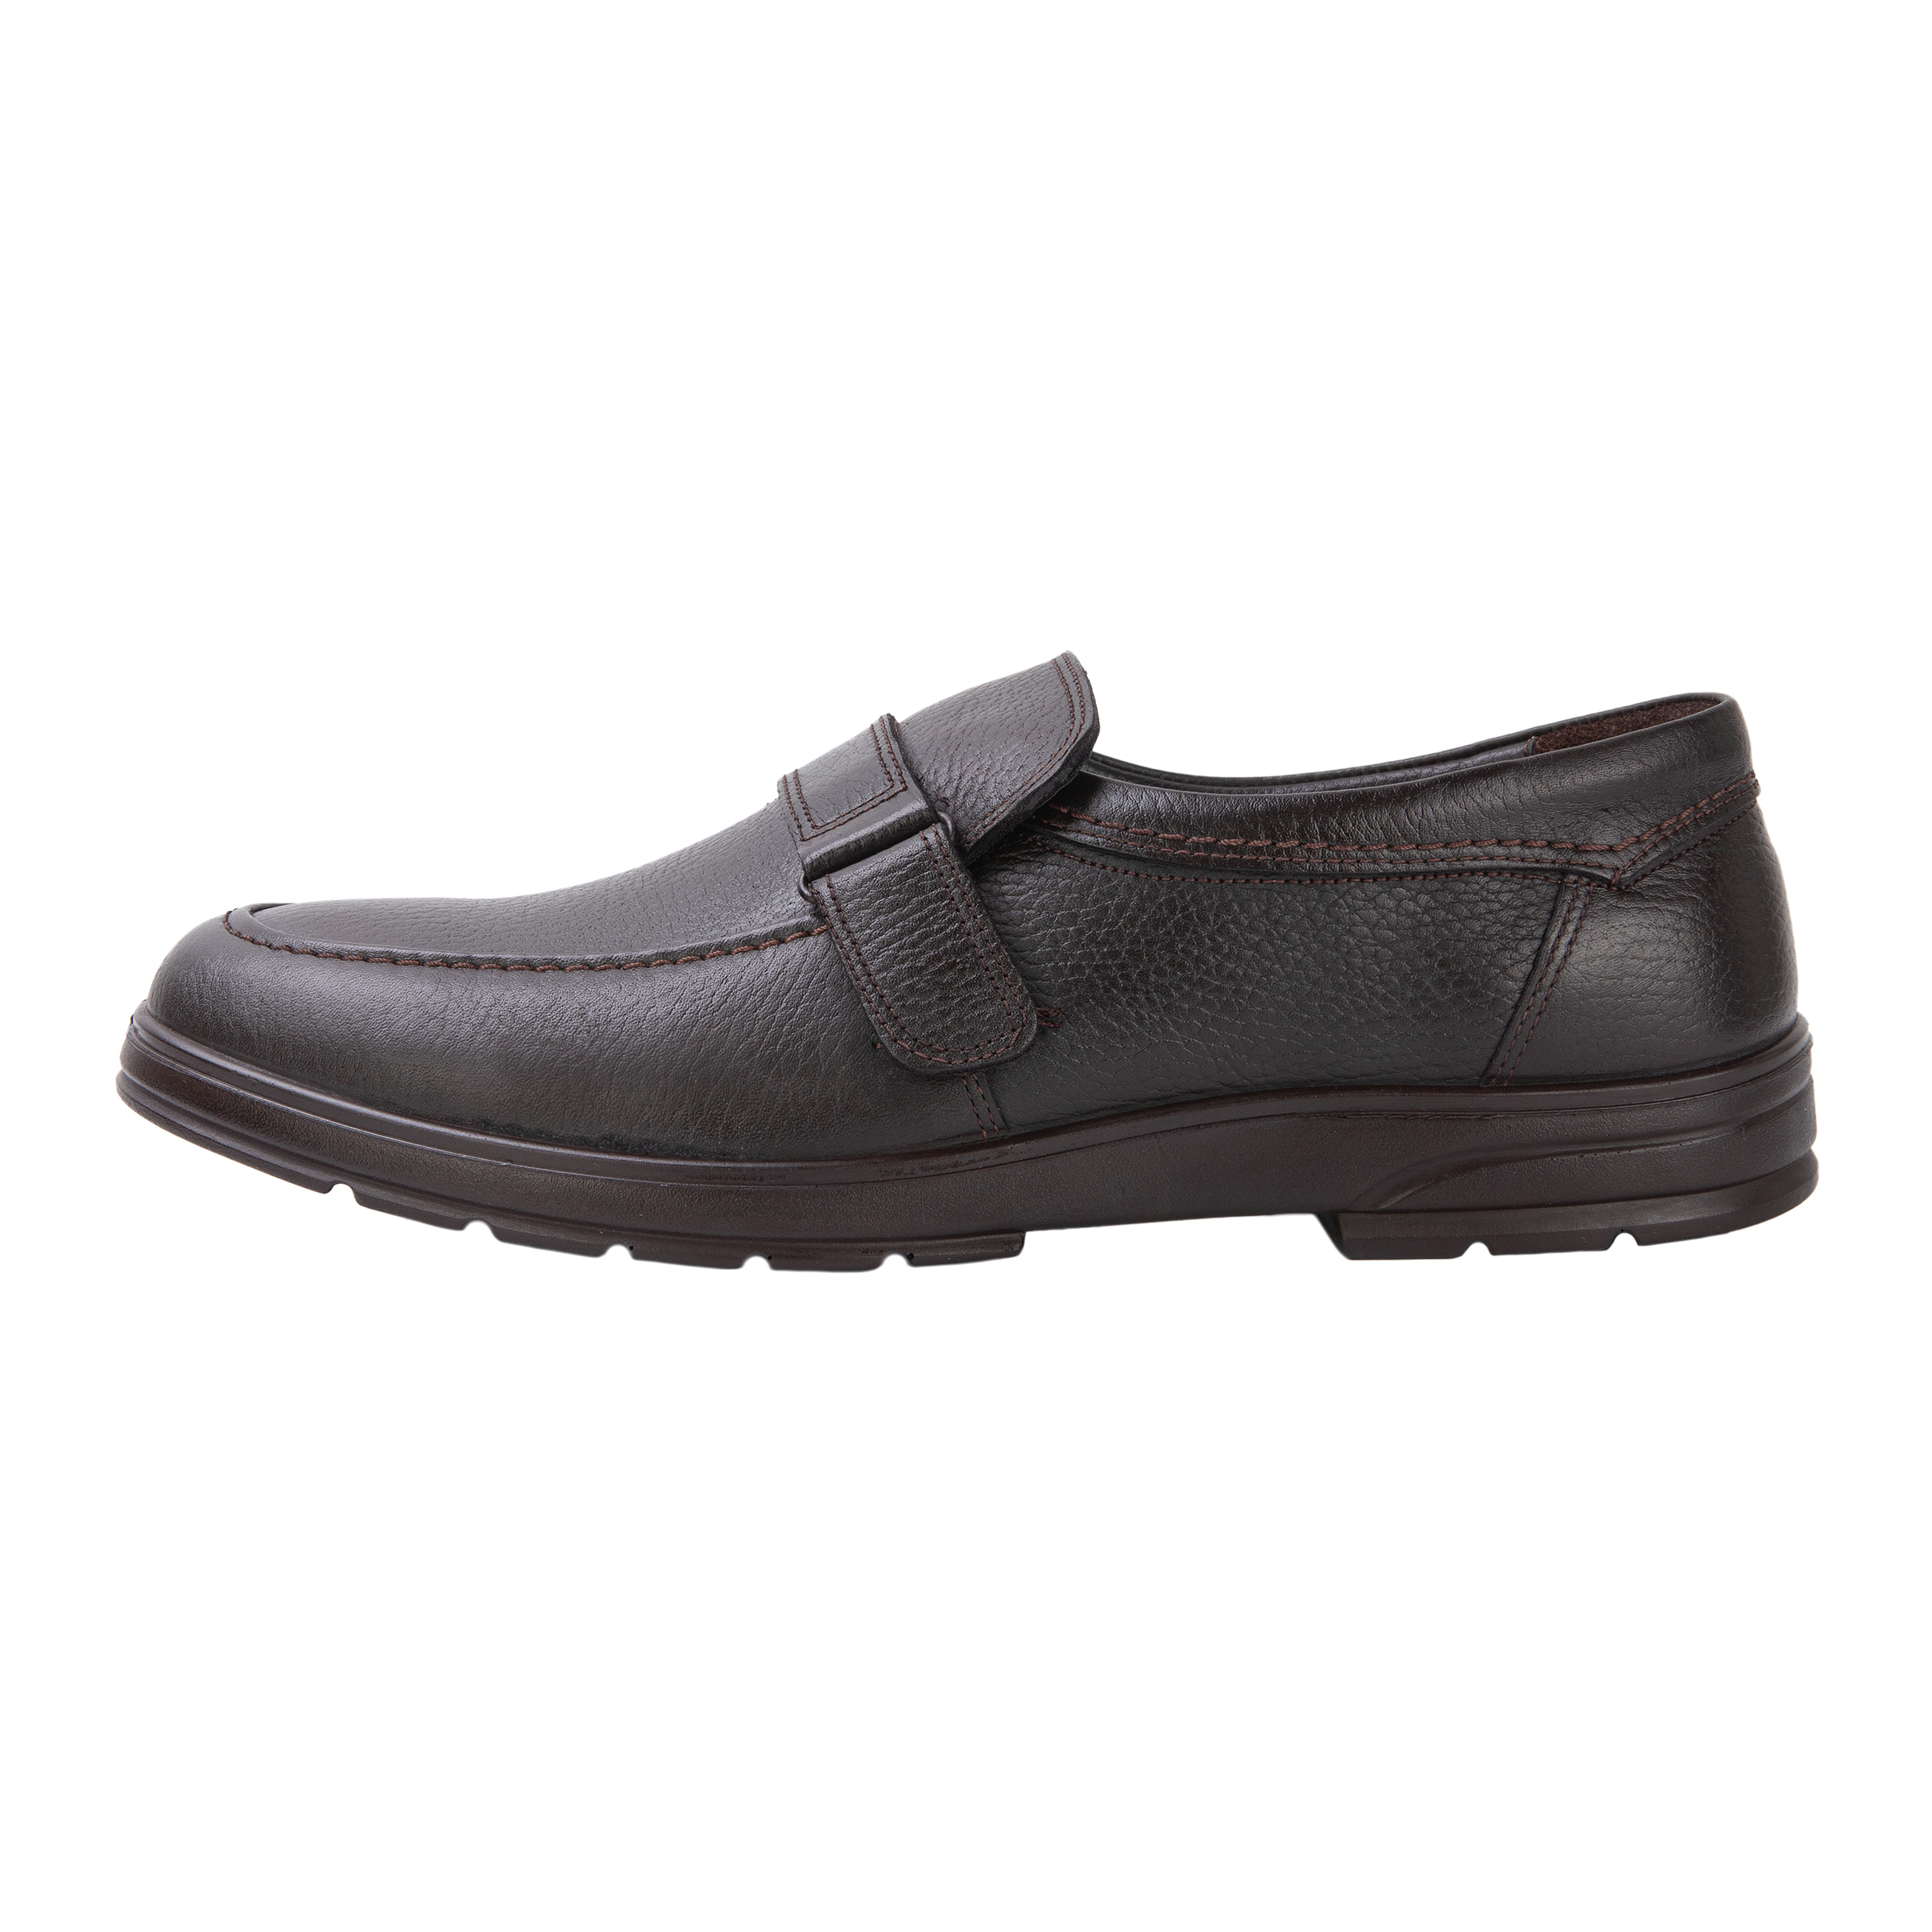 کفش روزمره مردانه شوپا مدل dbr-124 رنگ قهوه ای تیره